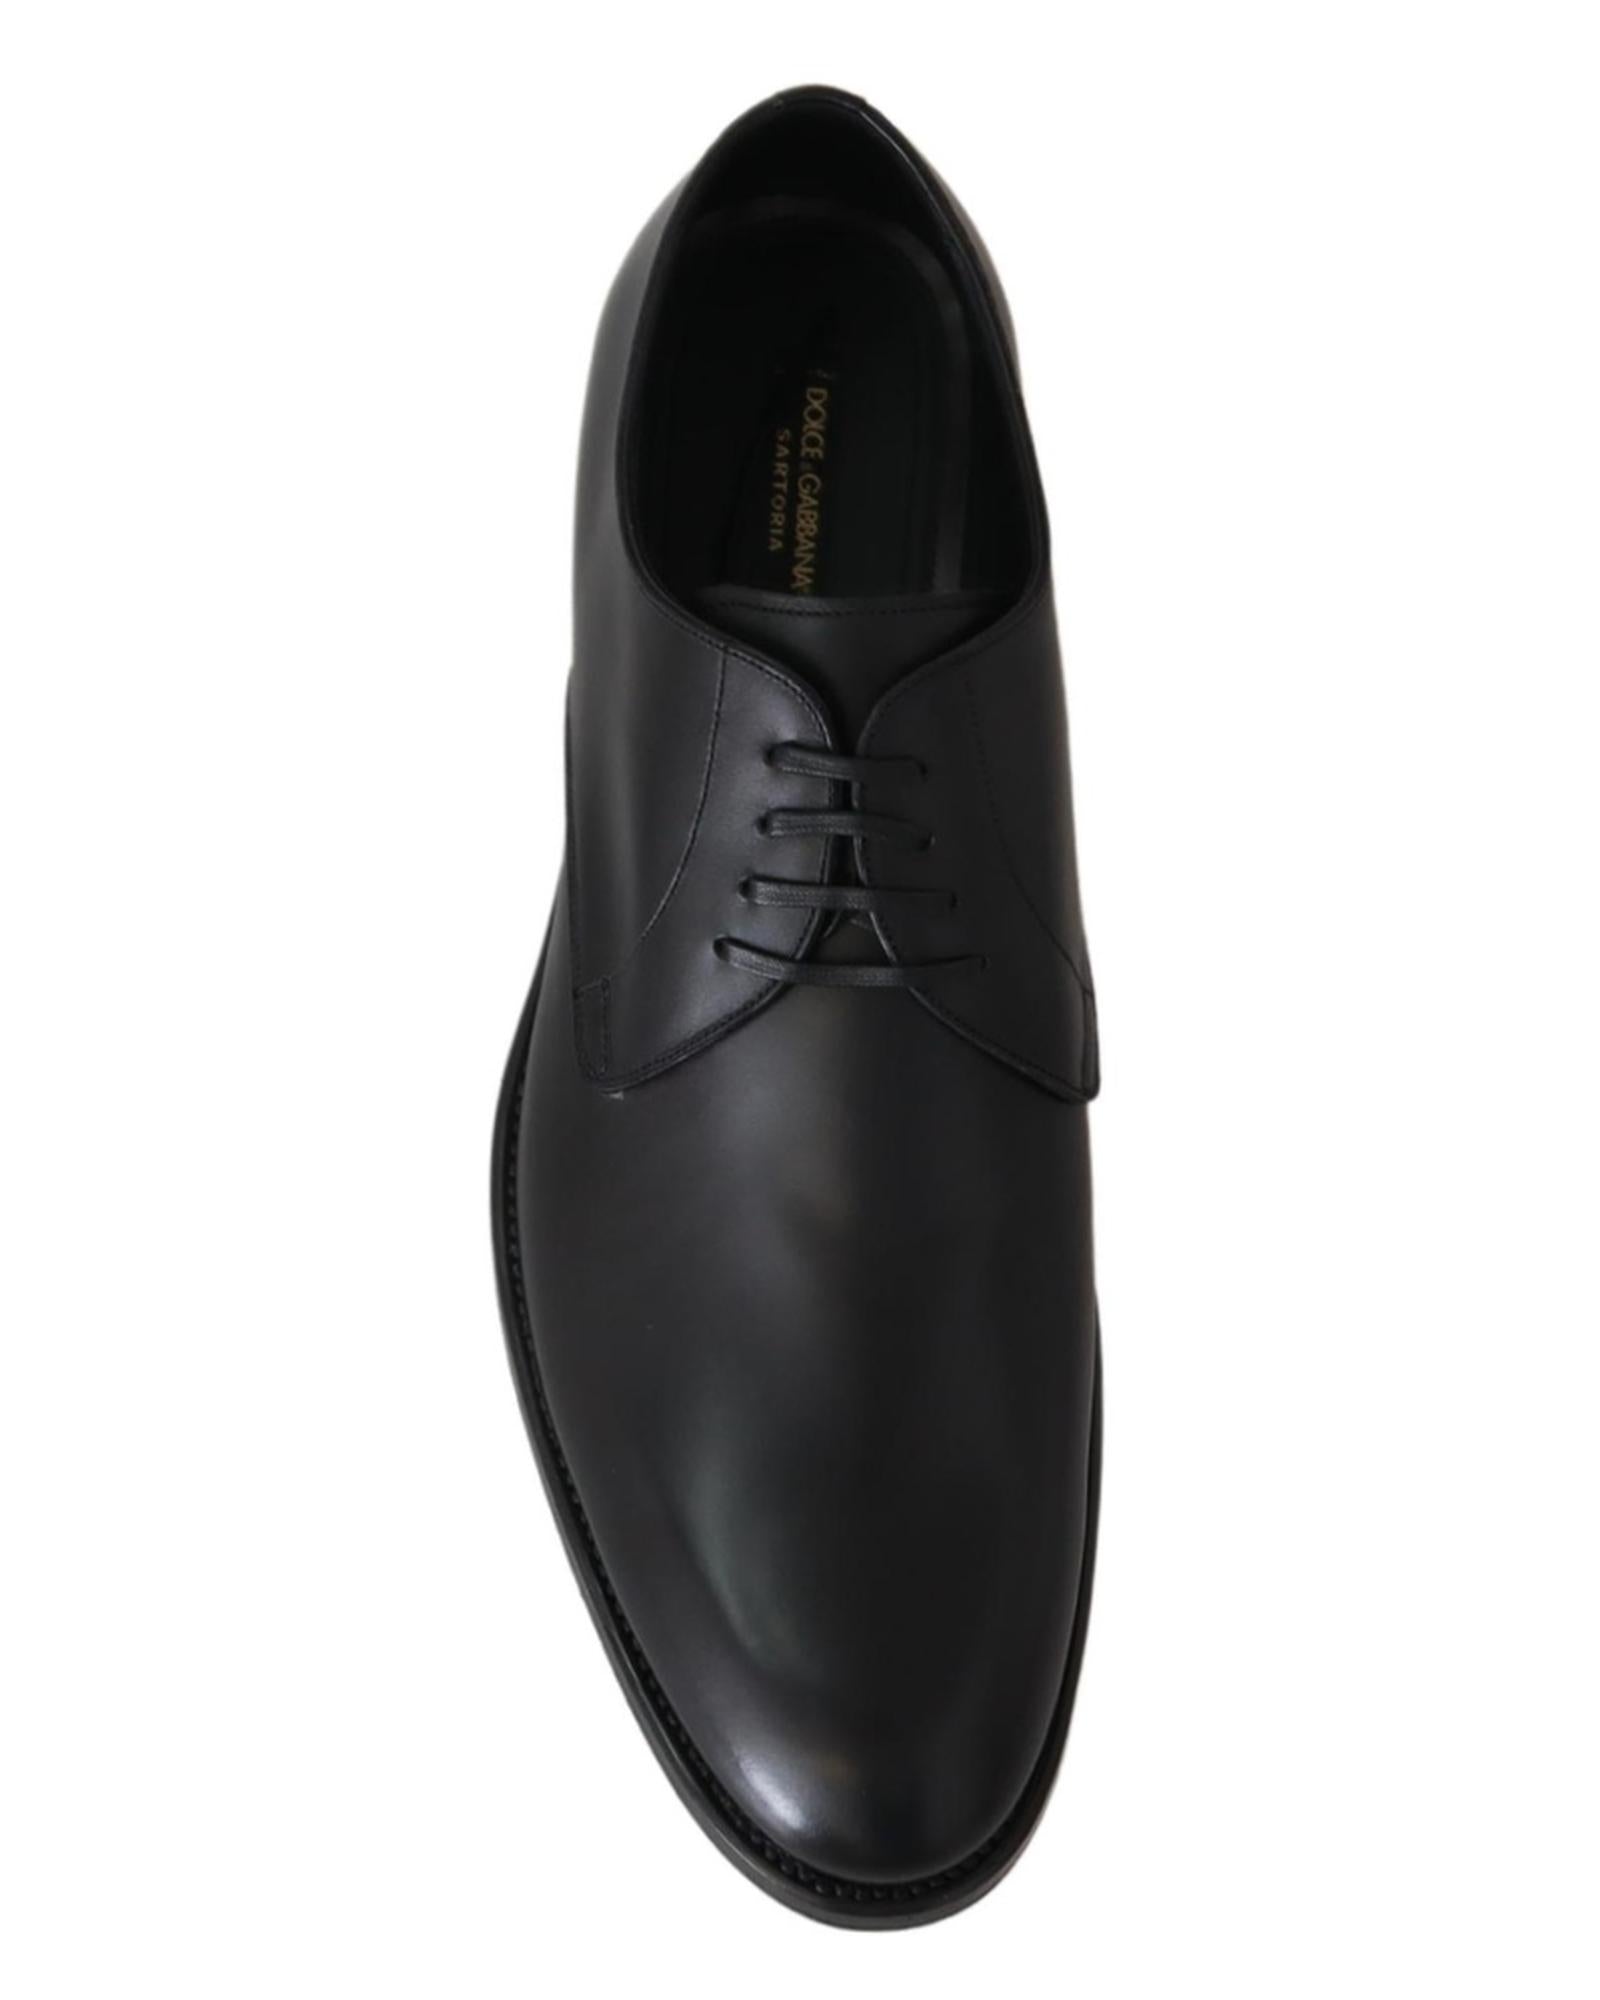 Handcrafted Black Leather Derby Dress Formal Shoes 38.5 EU Men